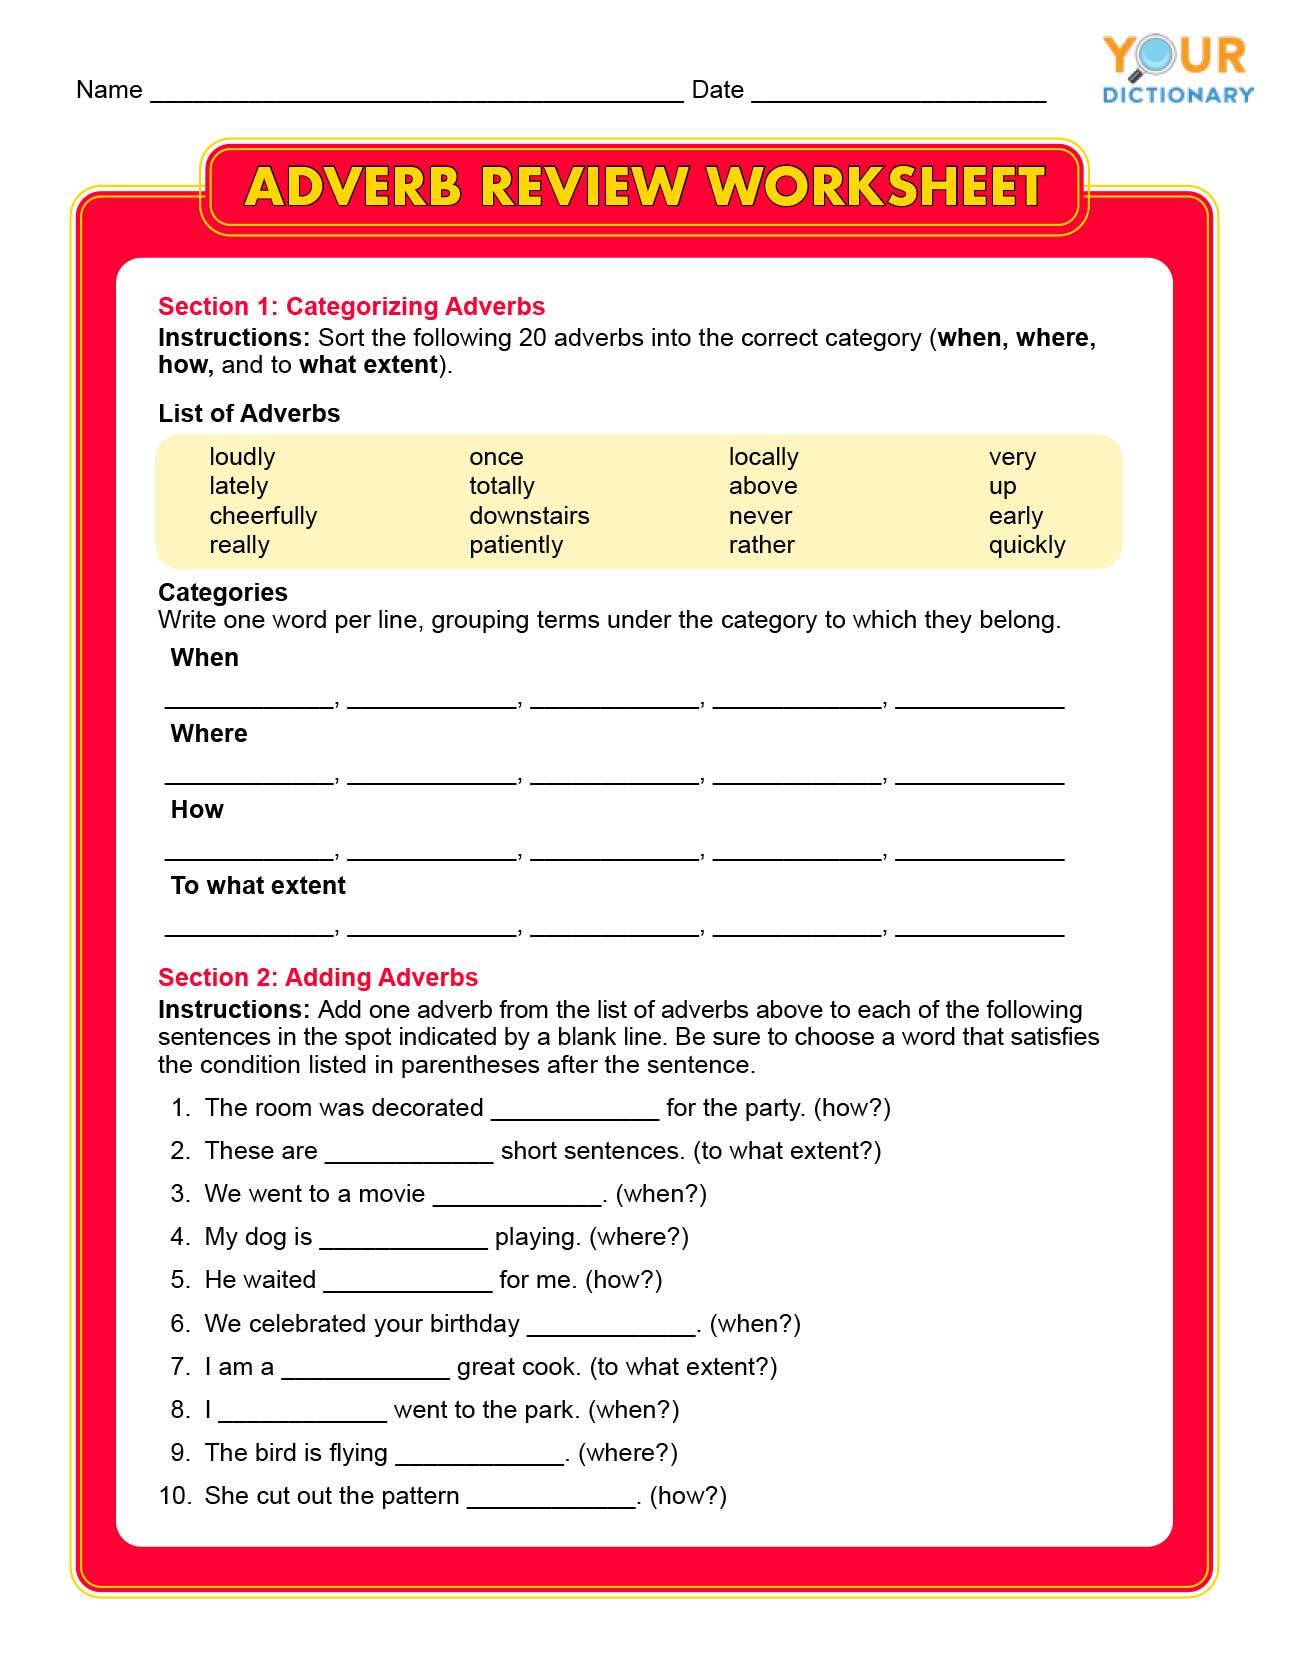 adverb review worksheet